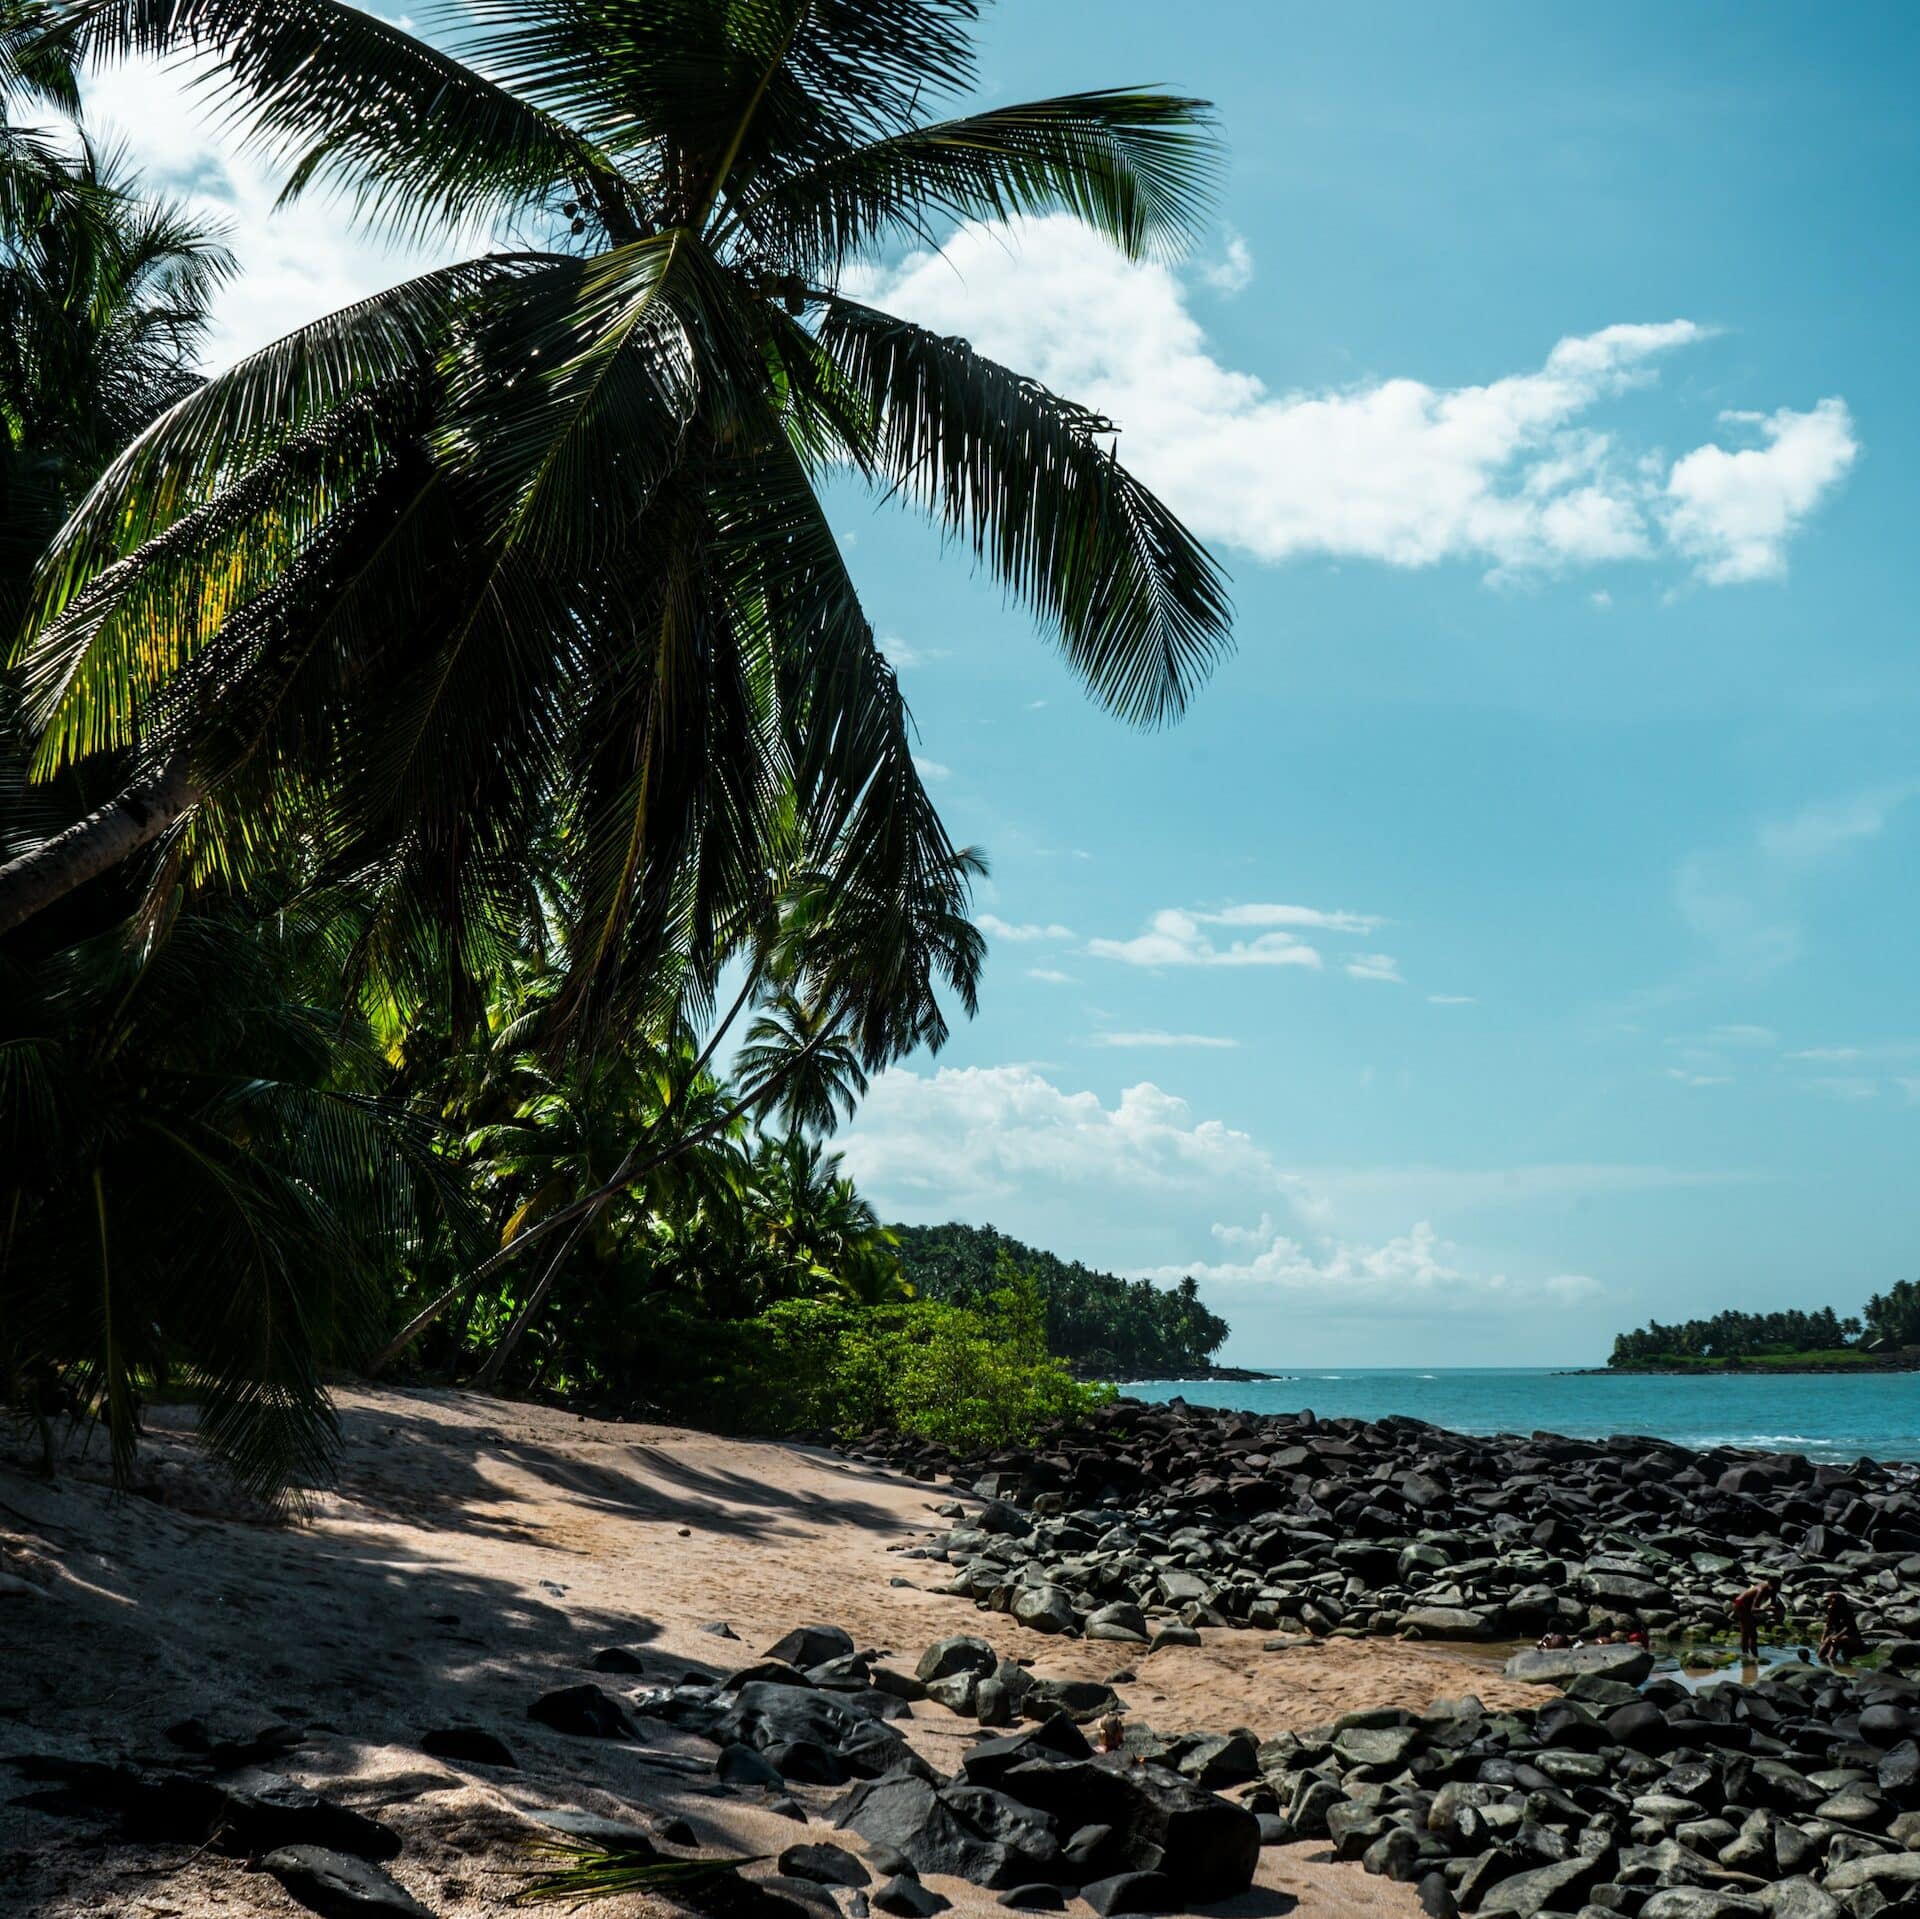 Praia com bastante pedras pretas à beira-mar, árvores ao lado de uma areia bege e mar azulado ao fundo. A imagem foi tirada em um dia ensolarado e serve para ilustrar o post chip de celular Guiana Francesa